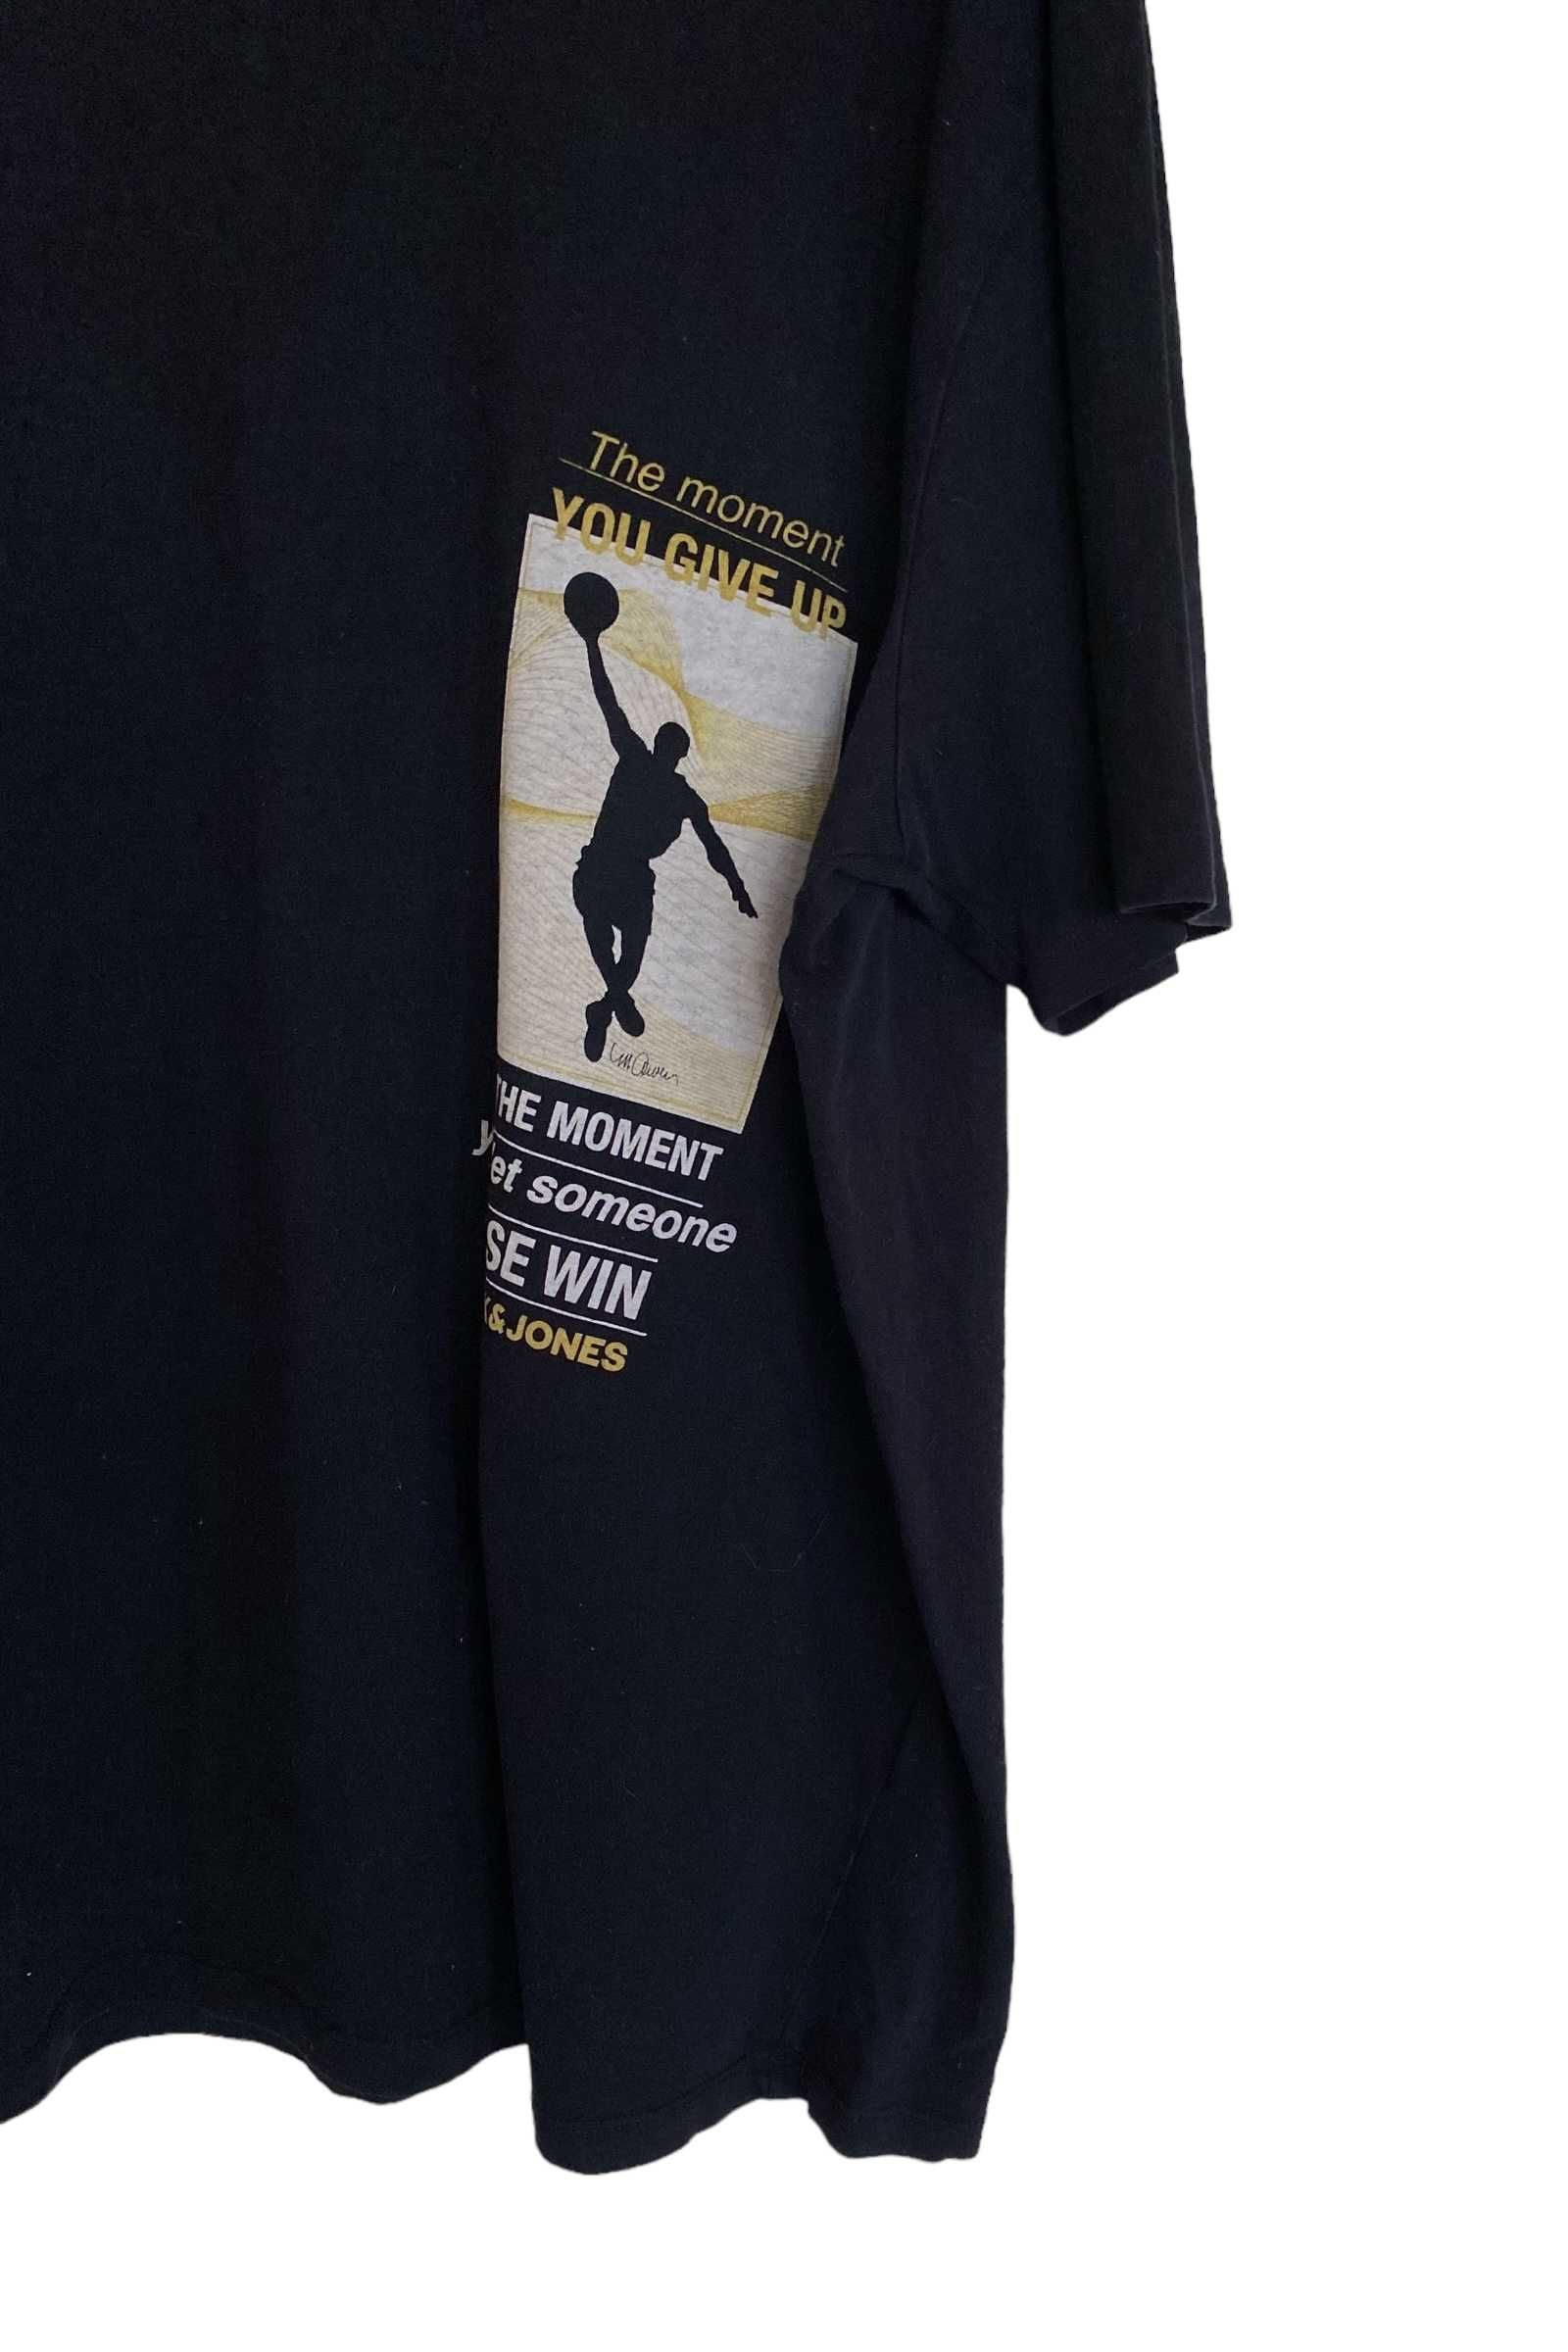 Kobe Bryant t-shirt, rozmiar XXL, stan bardzo dobry